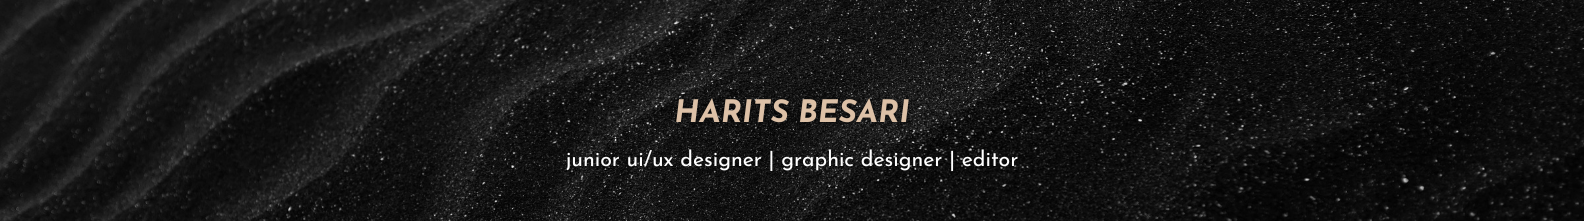 Harits Besari's profile banner